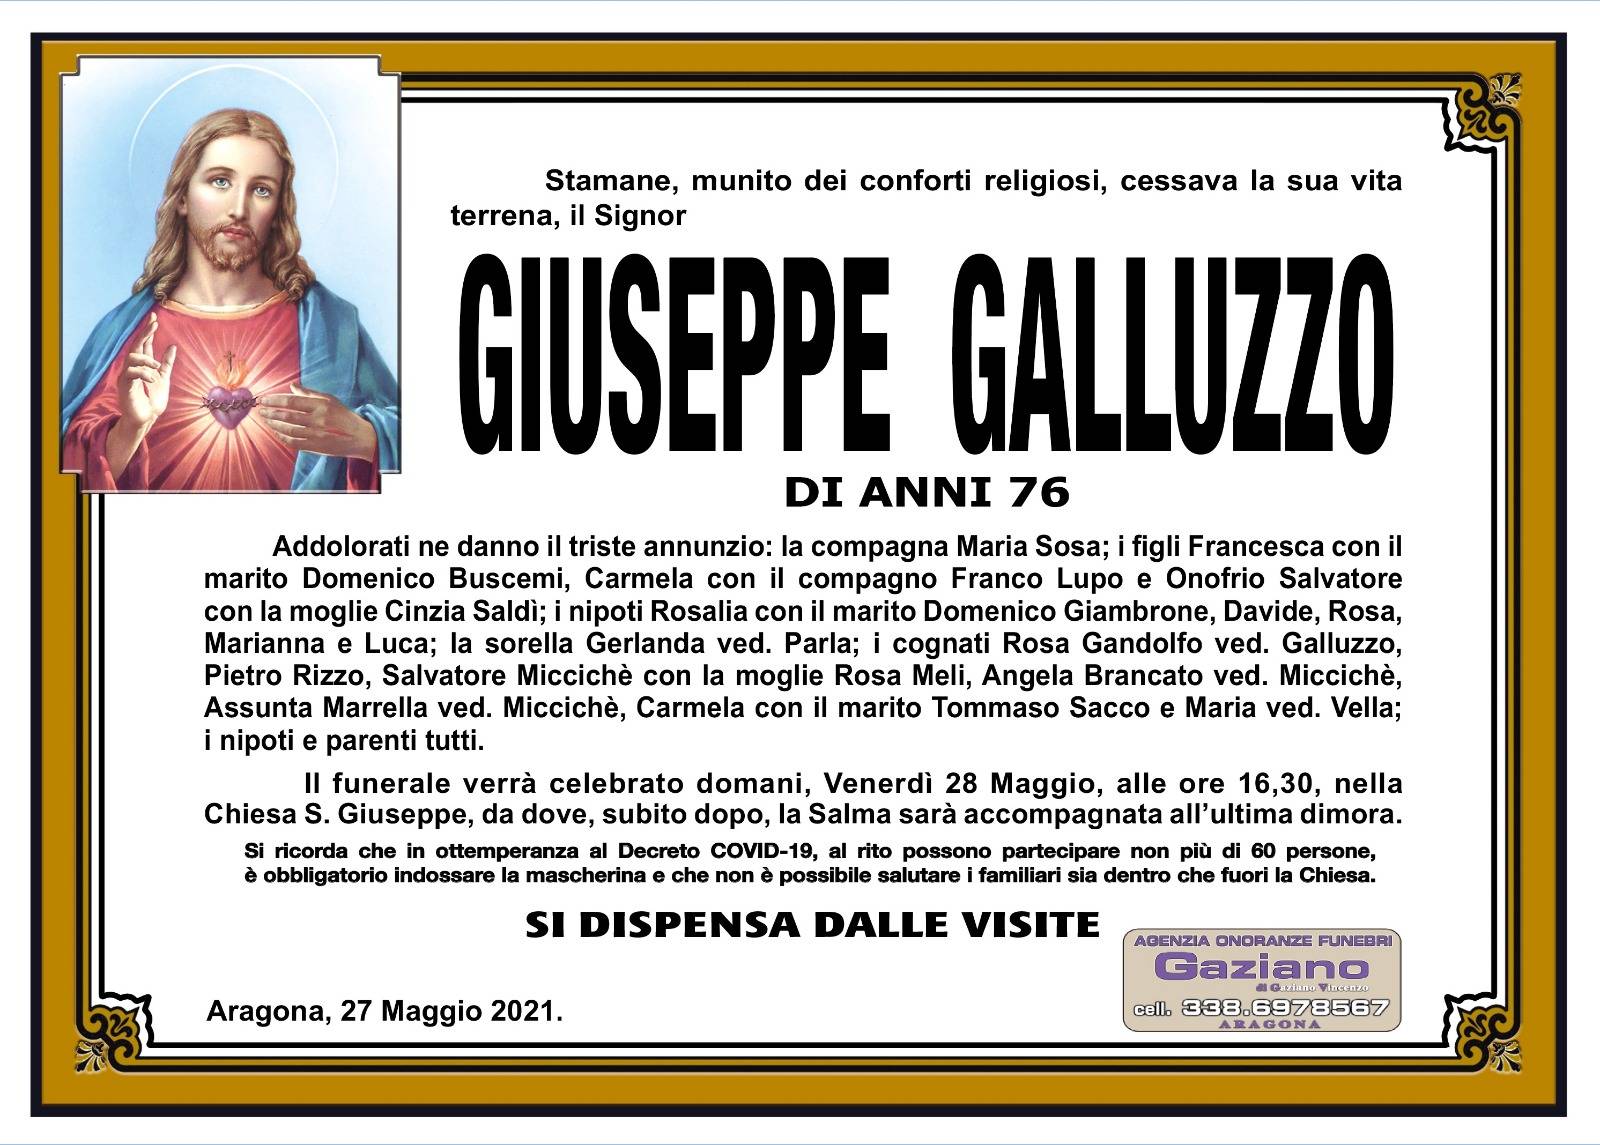 Giuseppe Galluzzo